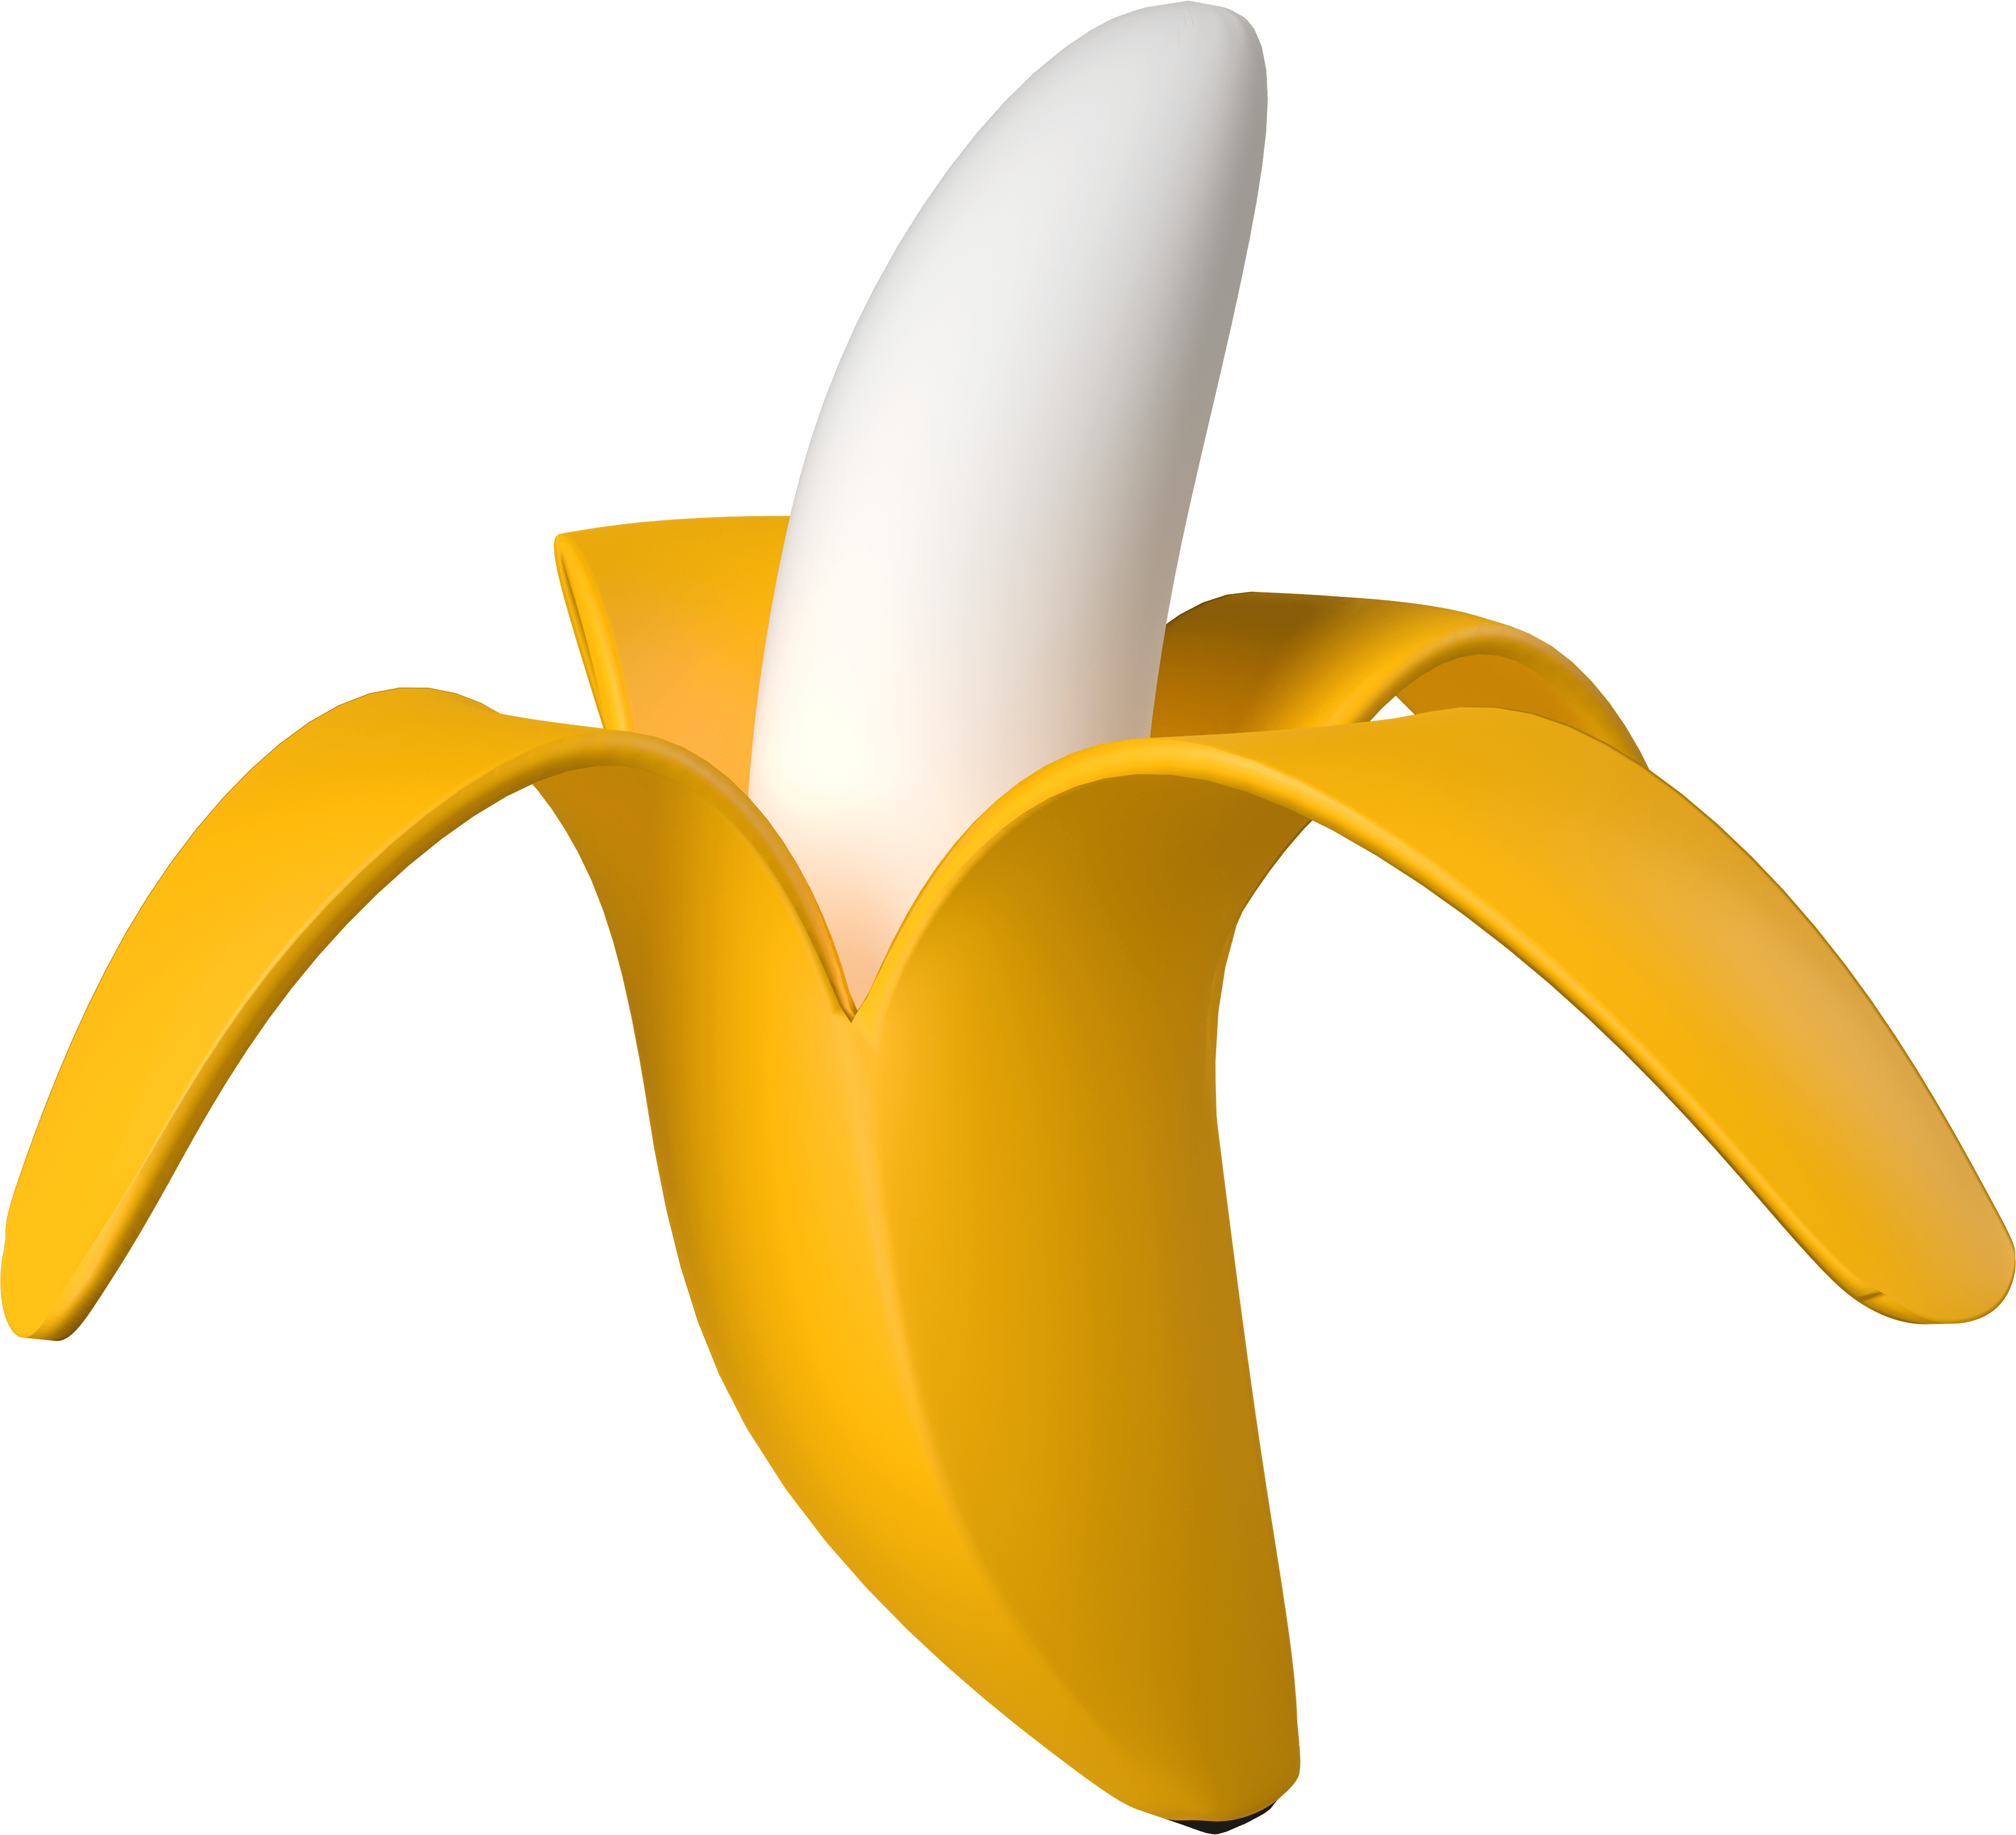 A 3D emoji of a banana